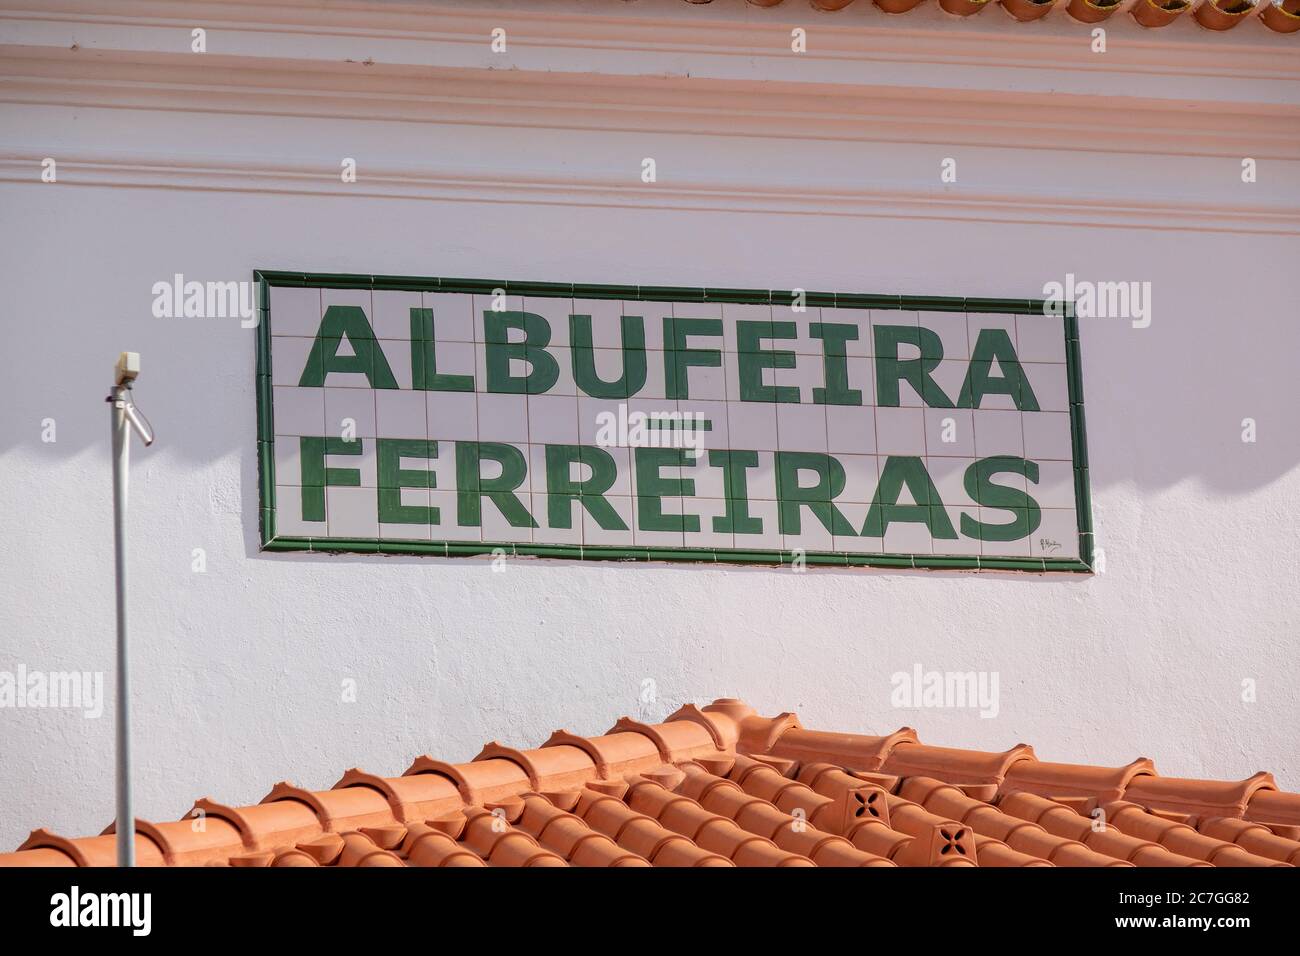 Das Albufeira Ferreiras Bahnhof Keramikfliesen Schild Auf Dem Bahnhofsgebäude Außenansicht Stockfoto